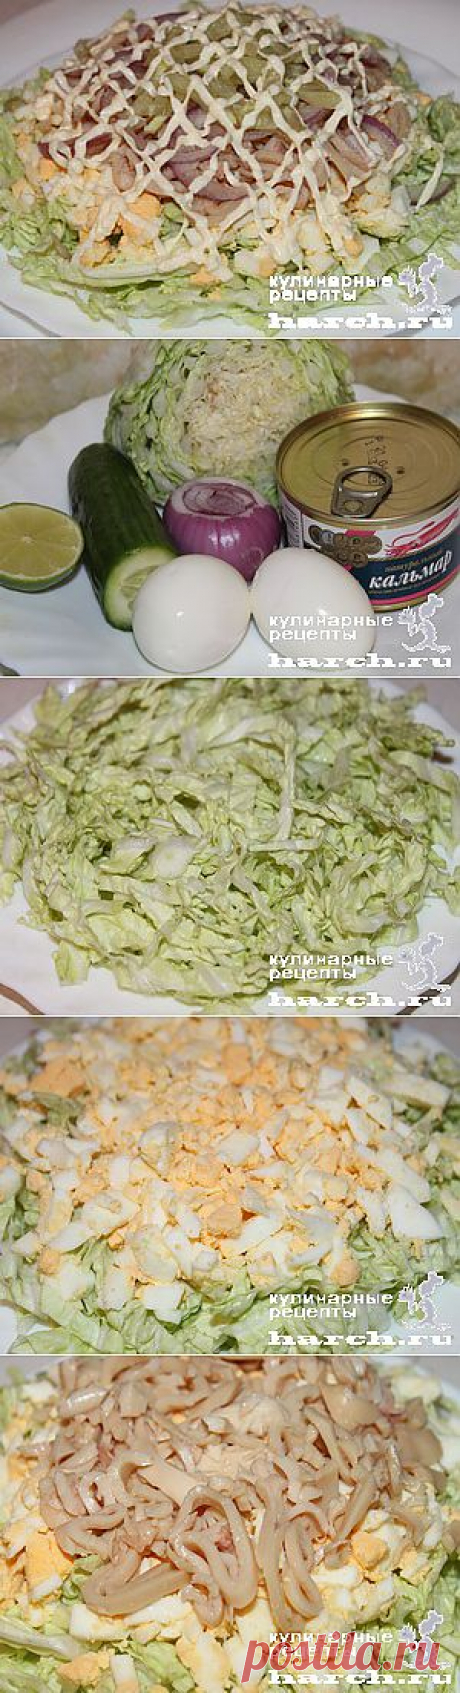 Салат из китайской капусты с консервированными кальмарами “Лирика” | Харч.ру - рецепты для любителей вкусно поесть